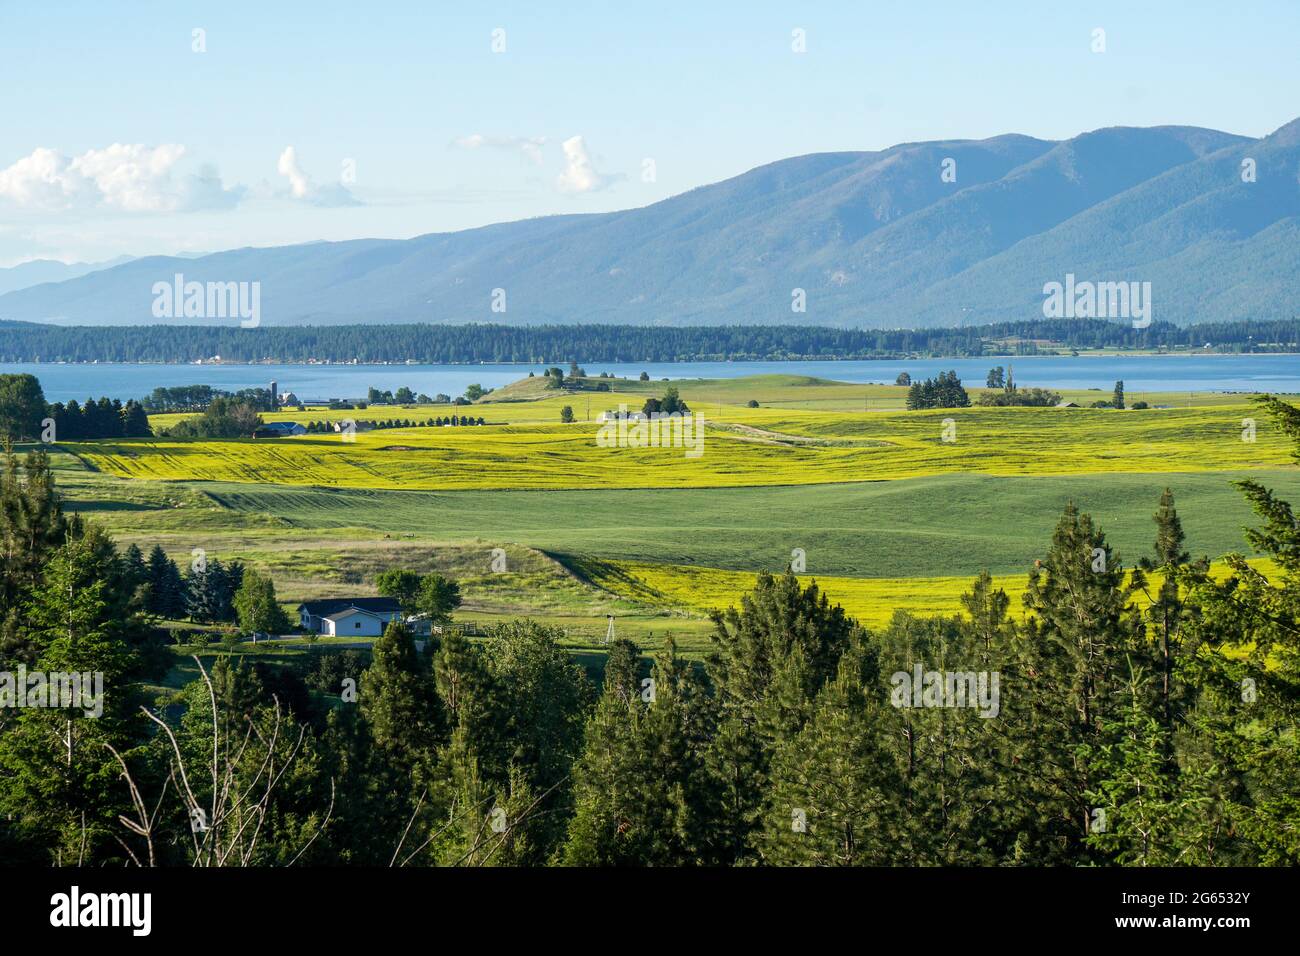 Der südliche Rand des Flathead Lake in der Nähe von Polson, Montana, ist von einem Aussichtspunkt mit Feldern von gelben Blüten, die voller Farbe platzen, aus gesehen. Stockfoto